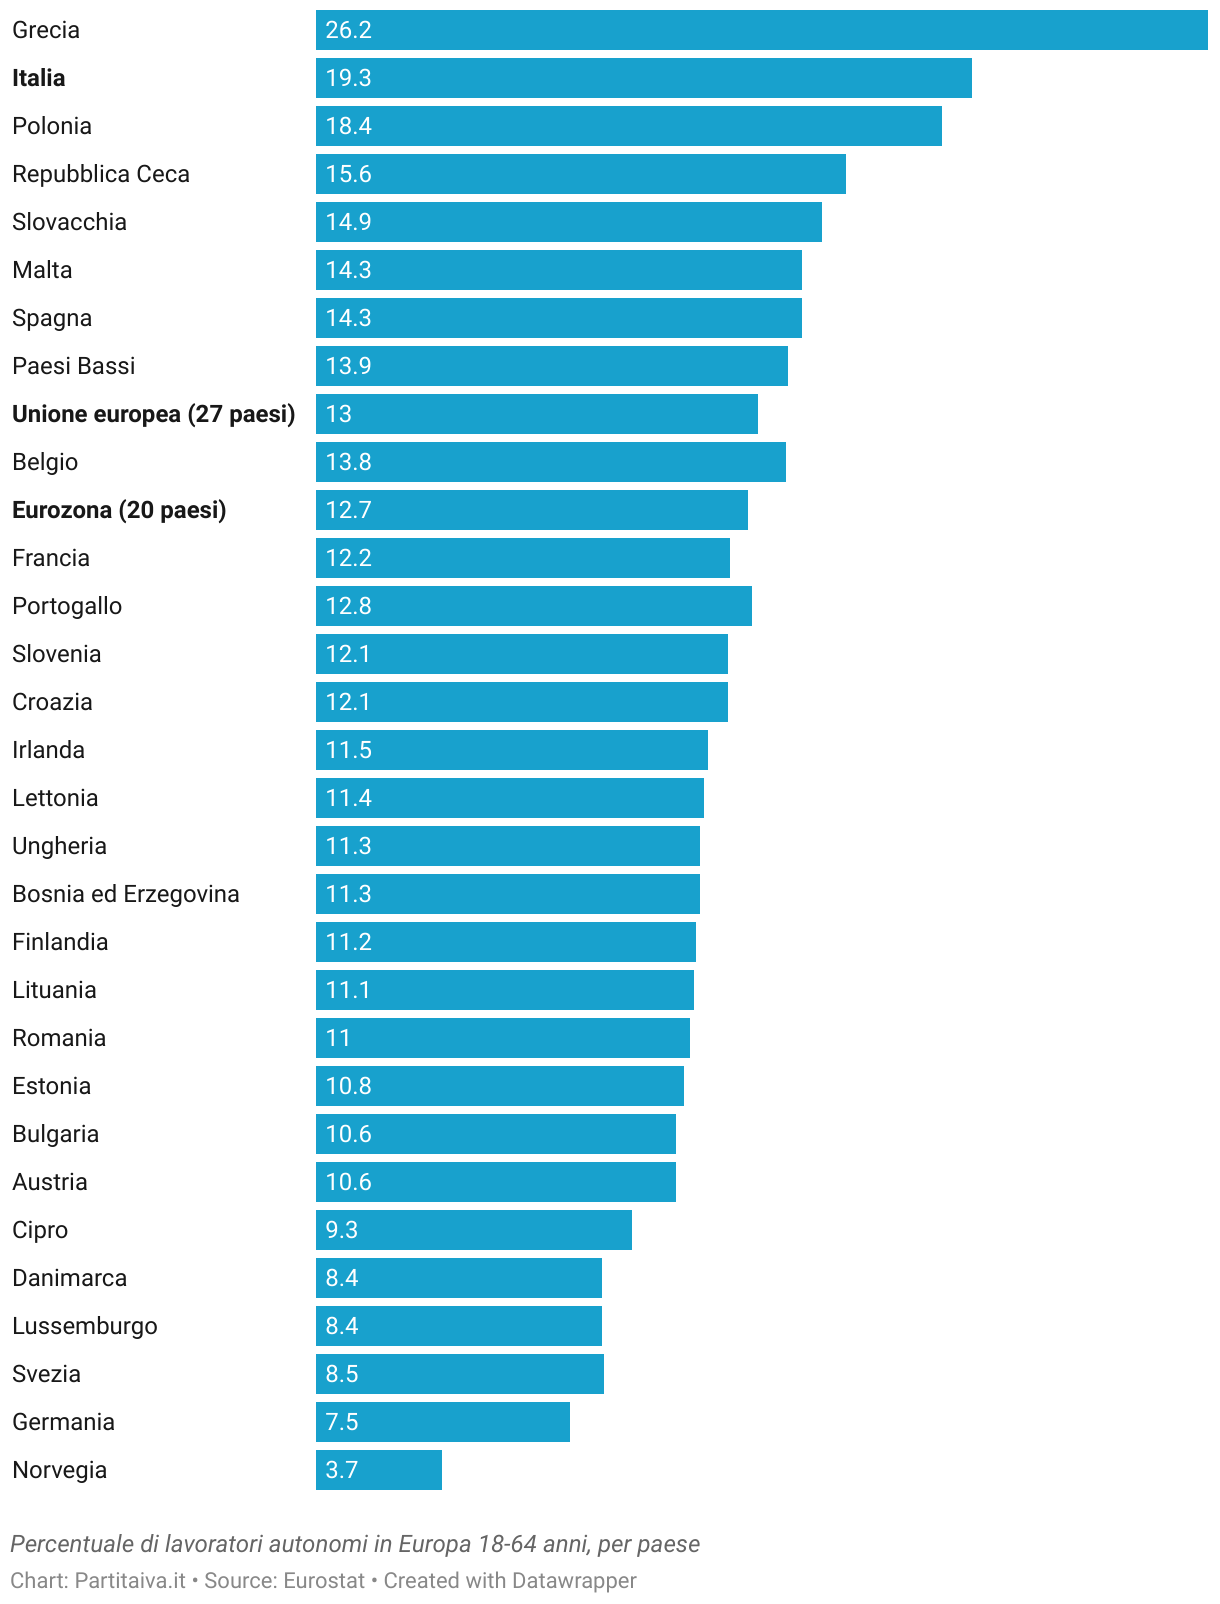 Percentuale di lavoratori autonomi in Europa, per paese